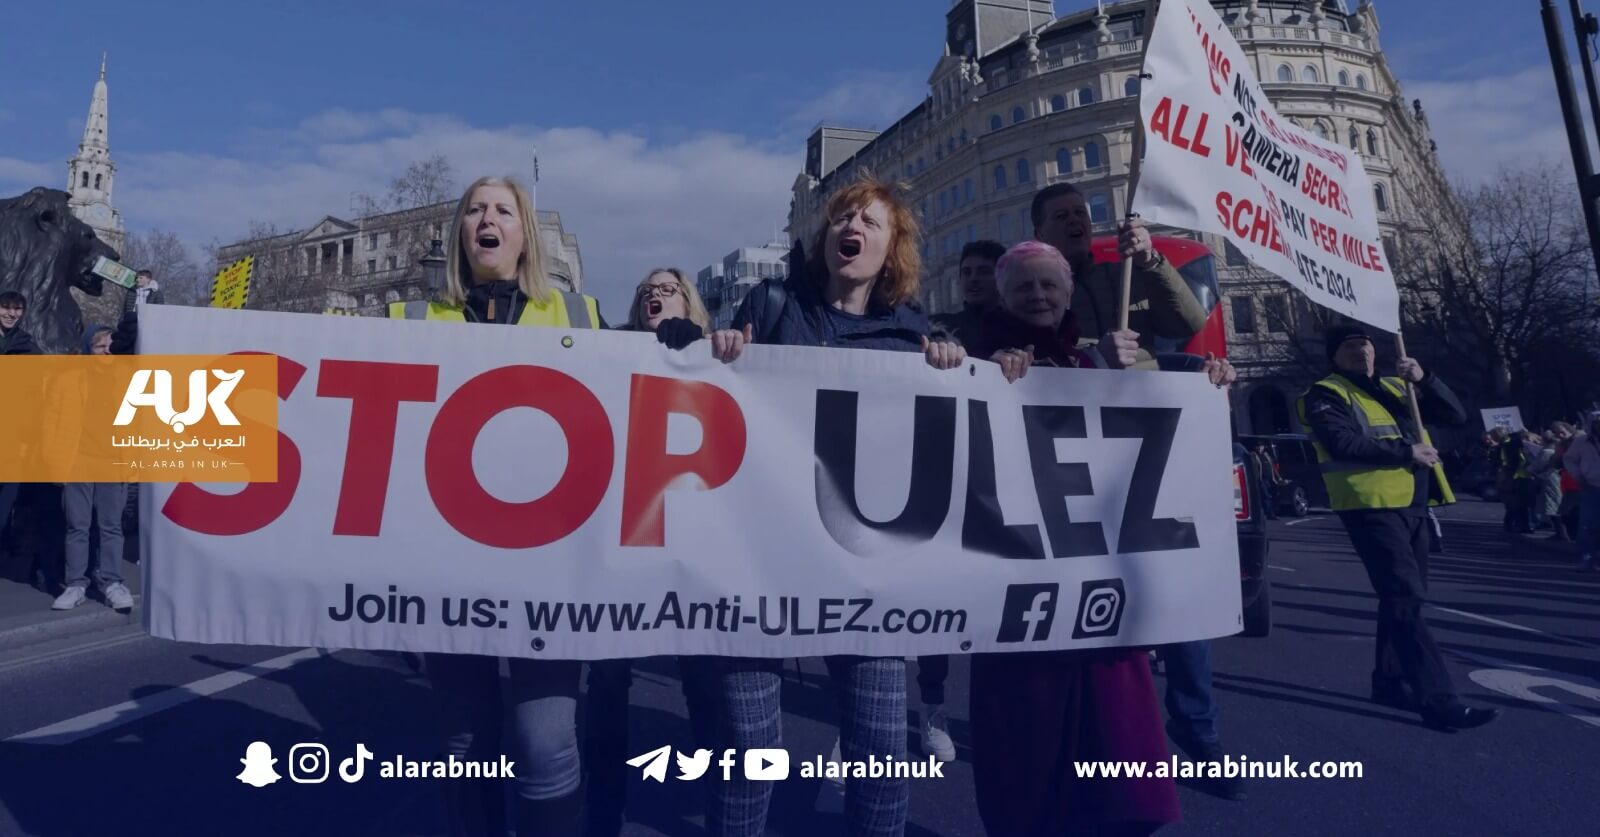 ترند بريطانيا: الشارع يحتفل بإعاقة خطط صادق خان لتوسعة منطقة ULEZ وغراماتها